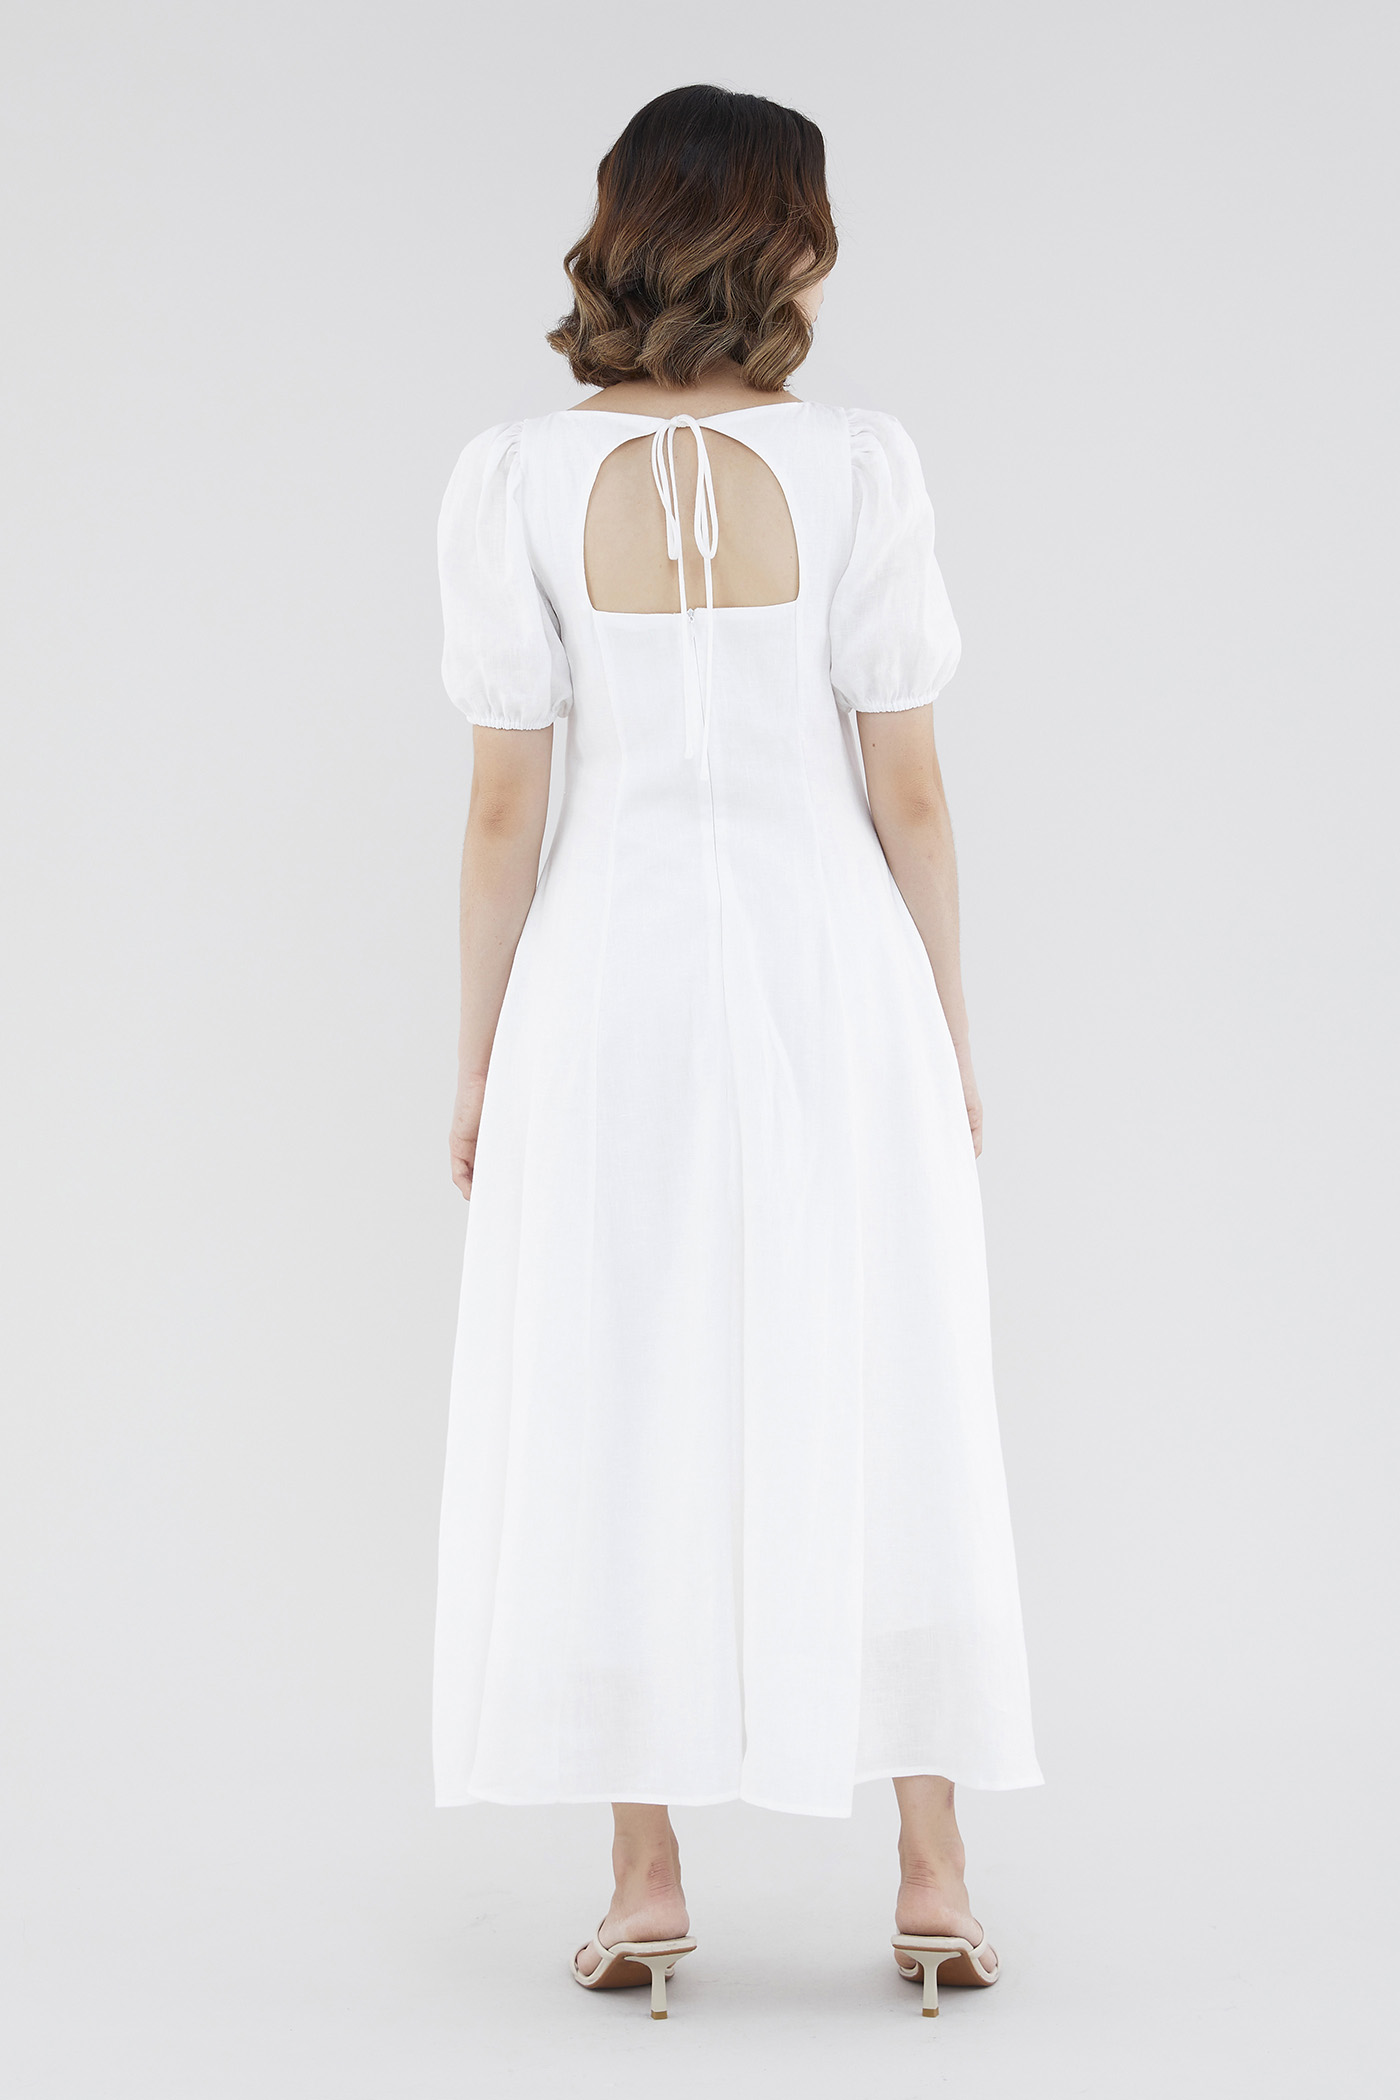 Pollee Linen Puff-Sleeve Dress